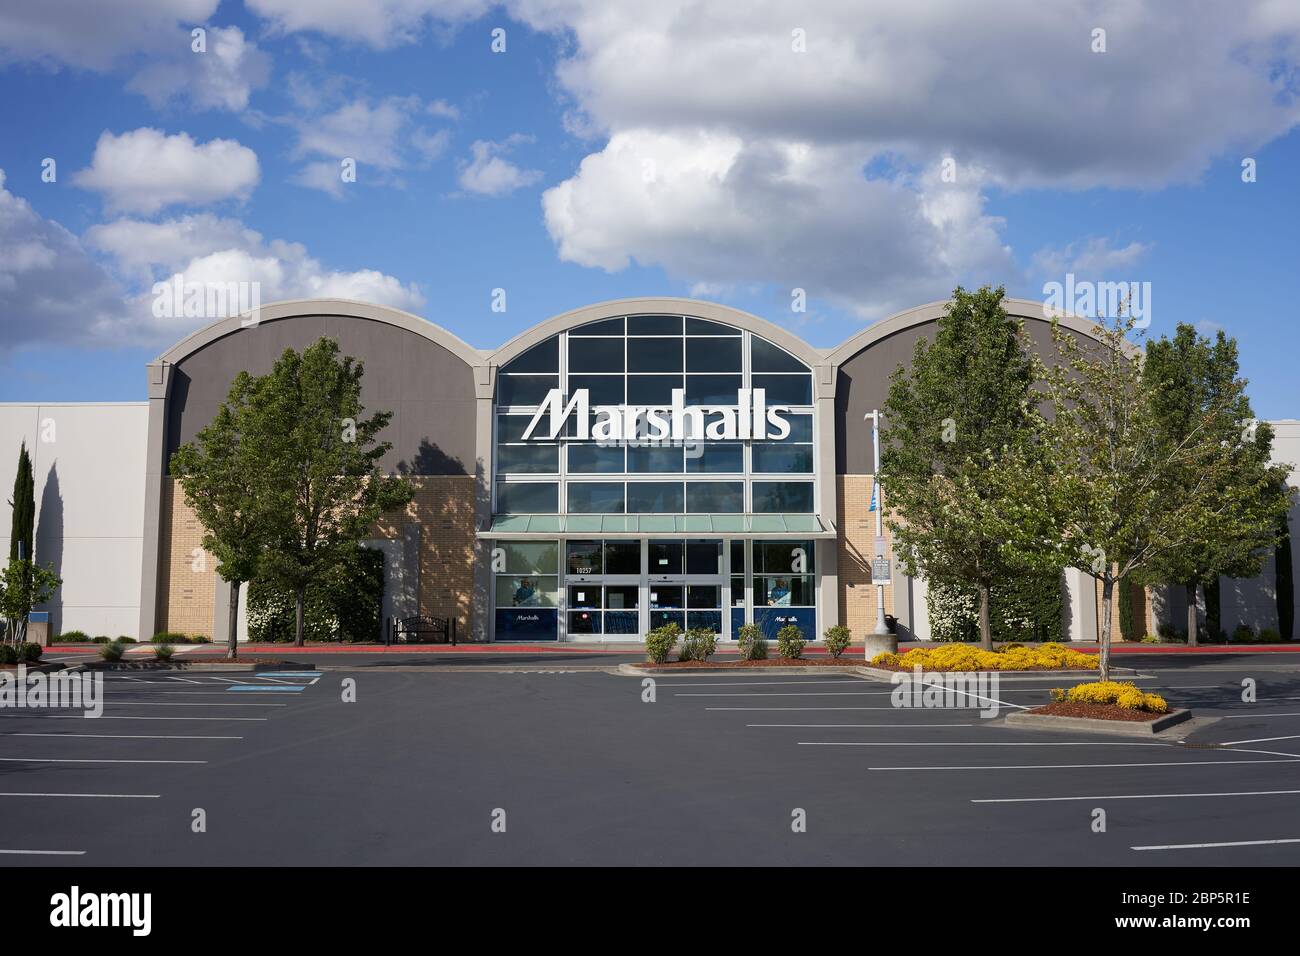 Fermeture du grand magasin à prix réduit Marshalls dans le centre commercial Cascade Station Shopping Centre, dans le nord-est de Portland, Oregon, pendant la pandémie du coronavirus. Banque D'Images